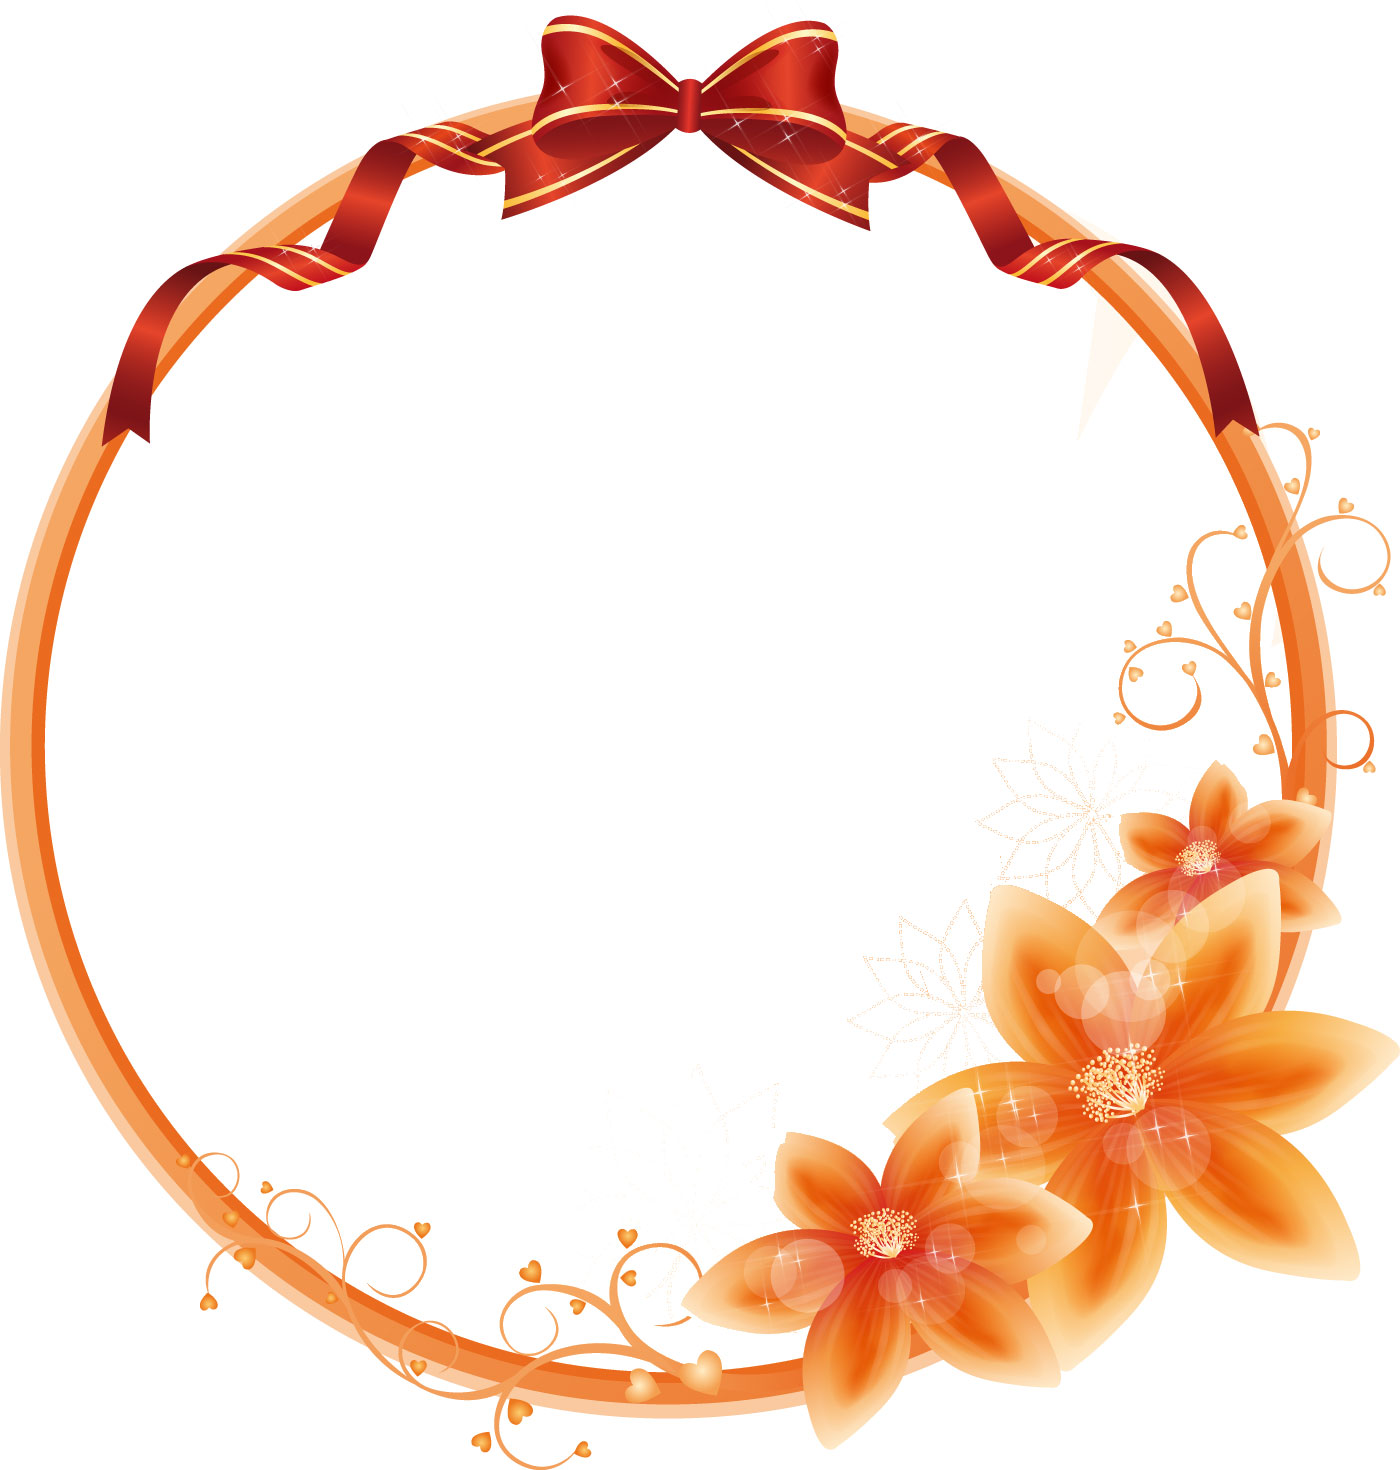 オレンジ色の花のイラスト フリー素材 No 177 オレンジ キラキラ